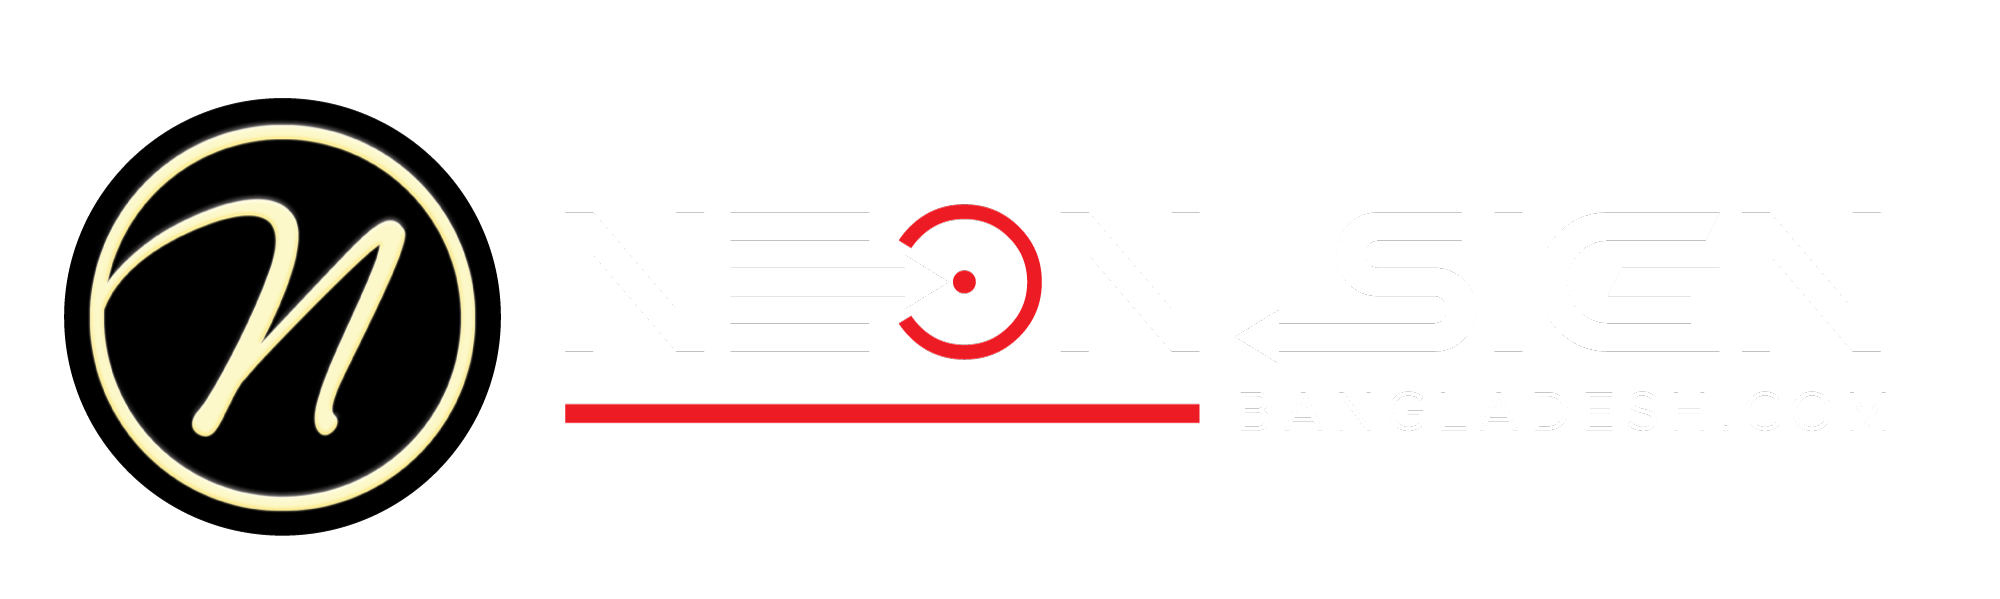 Neon Sign Bangladesh Logo